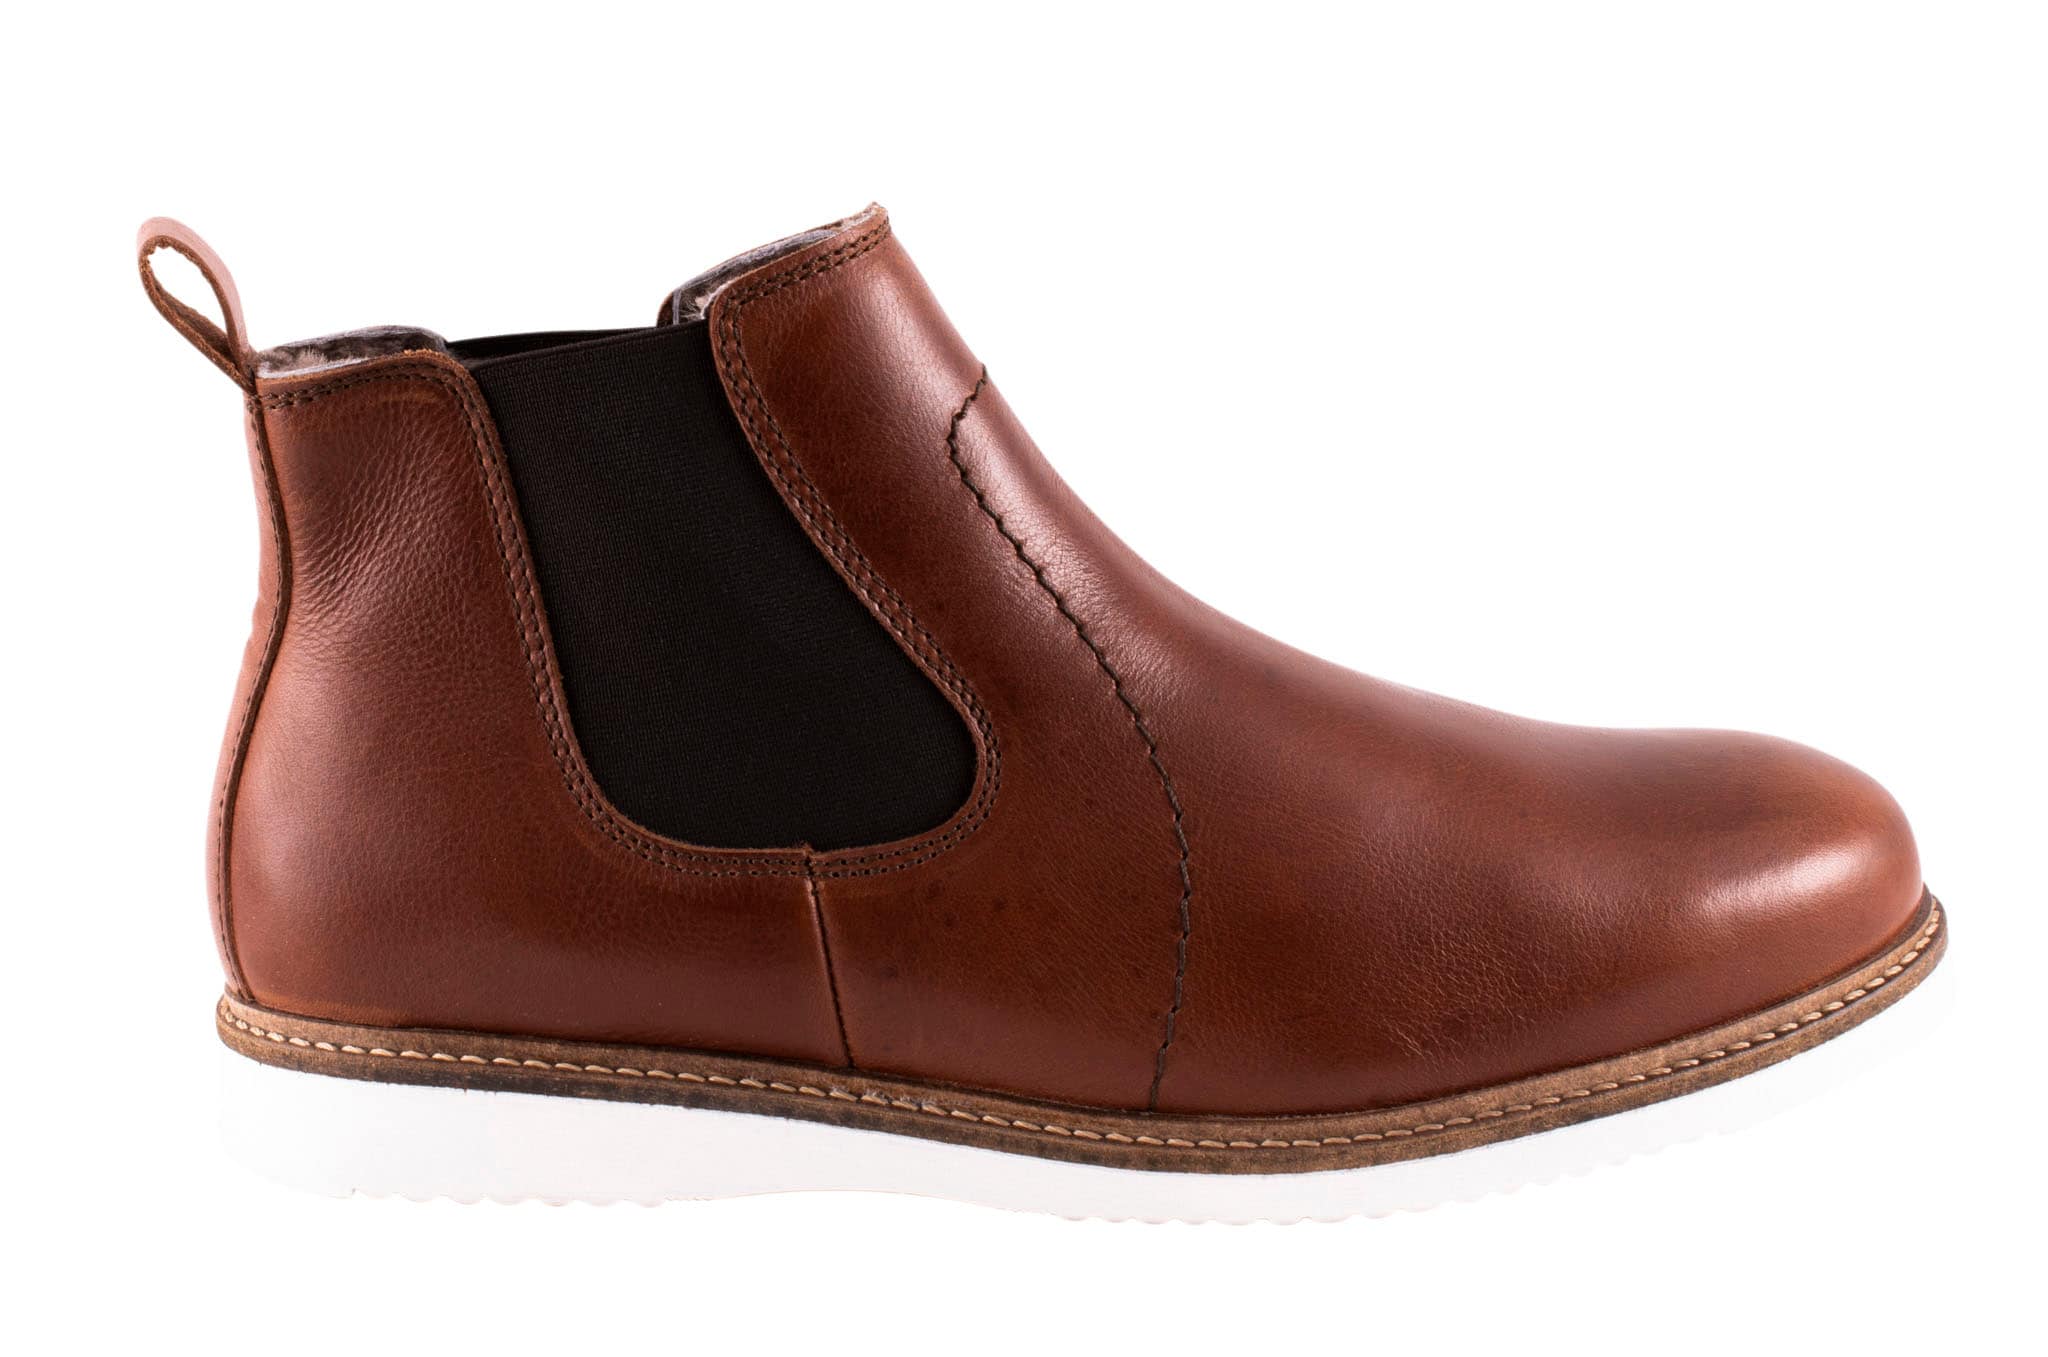 Stefan boots